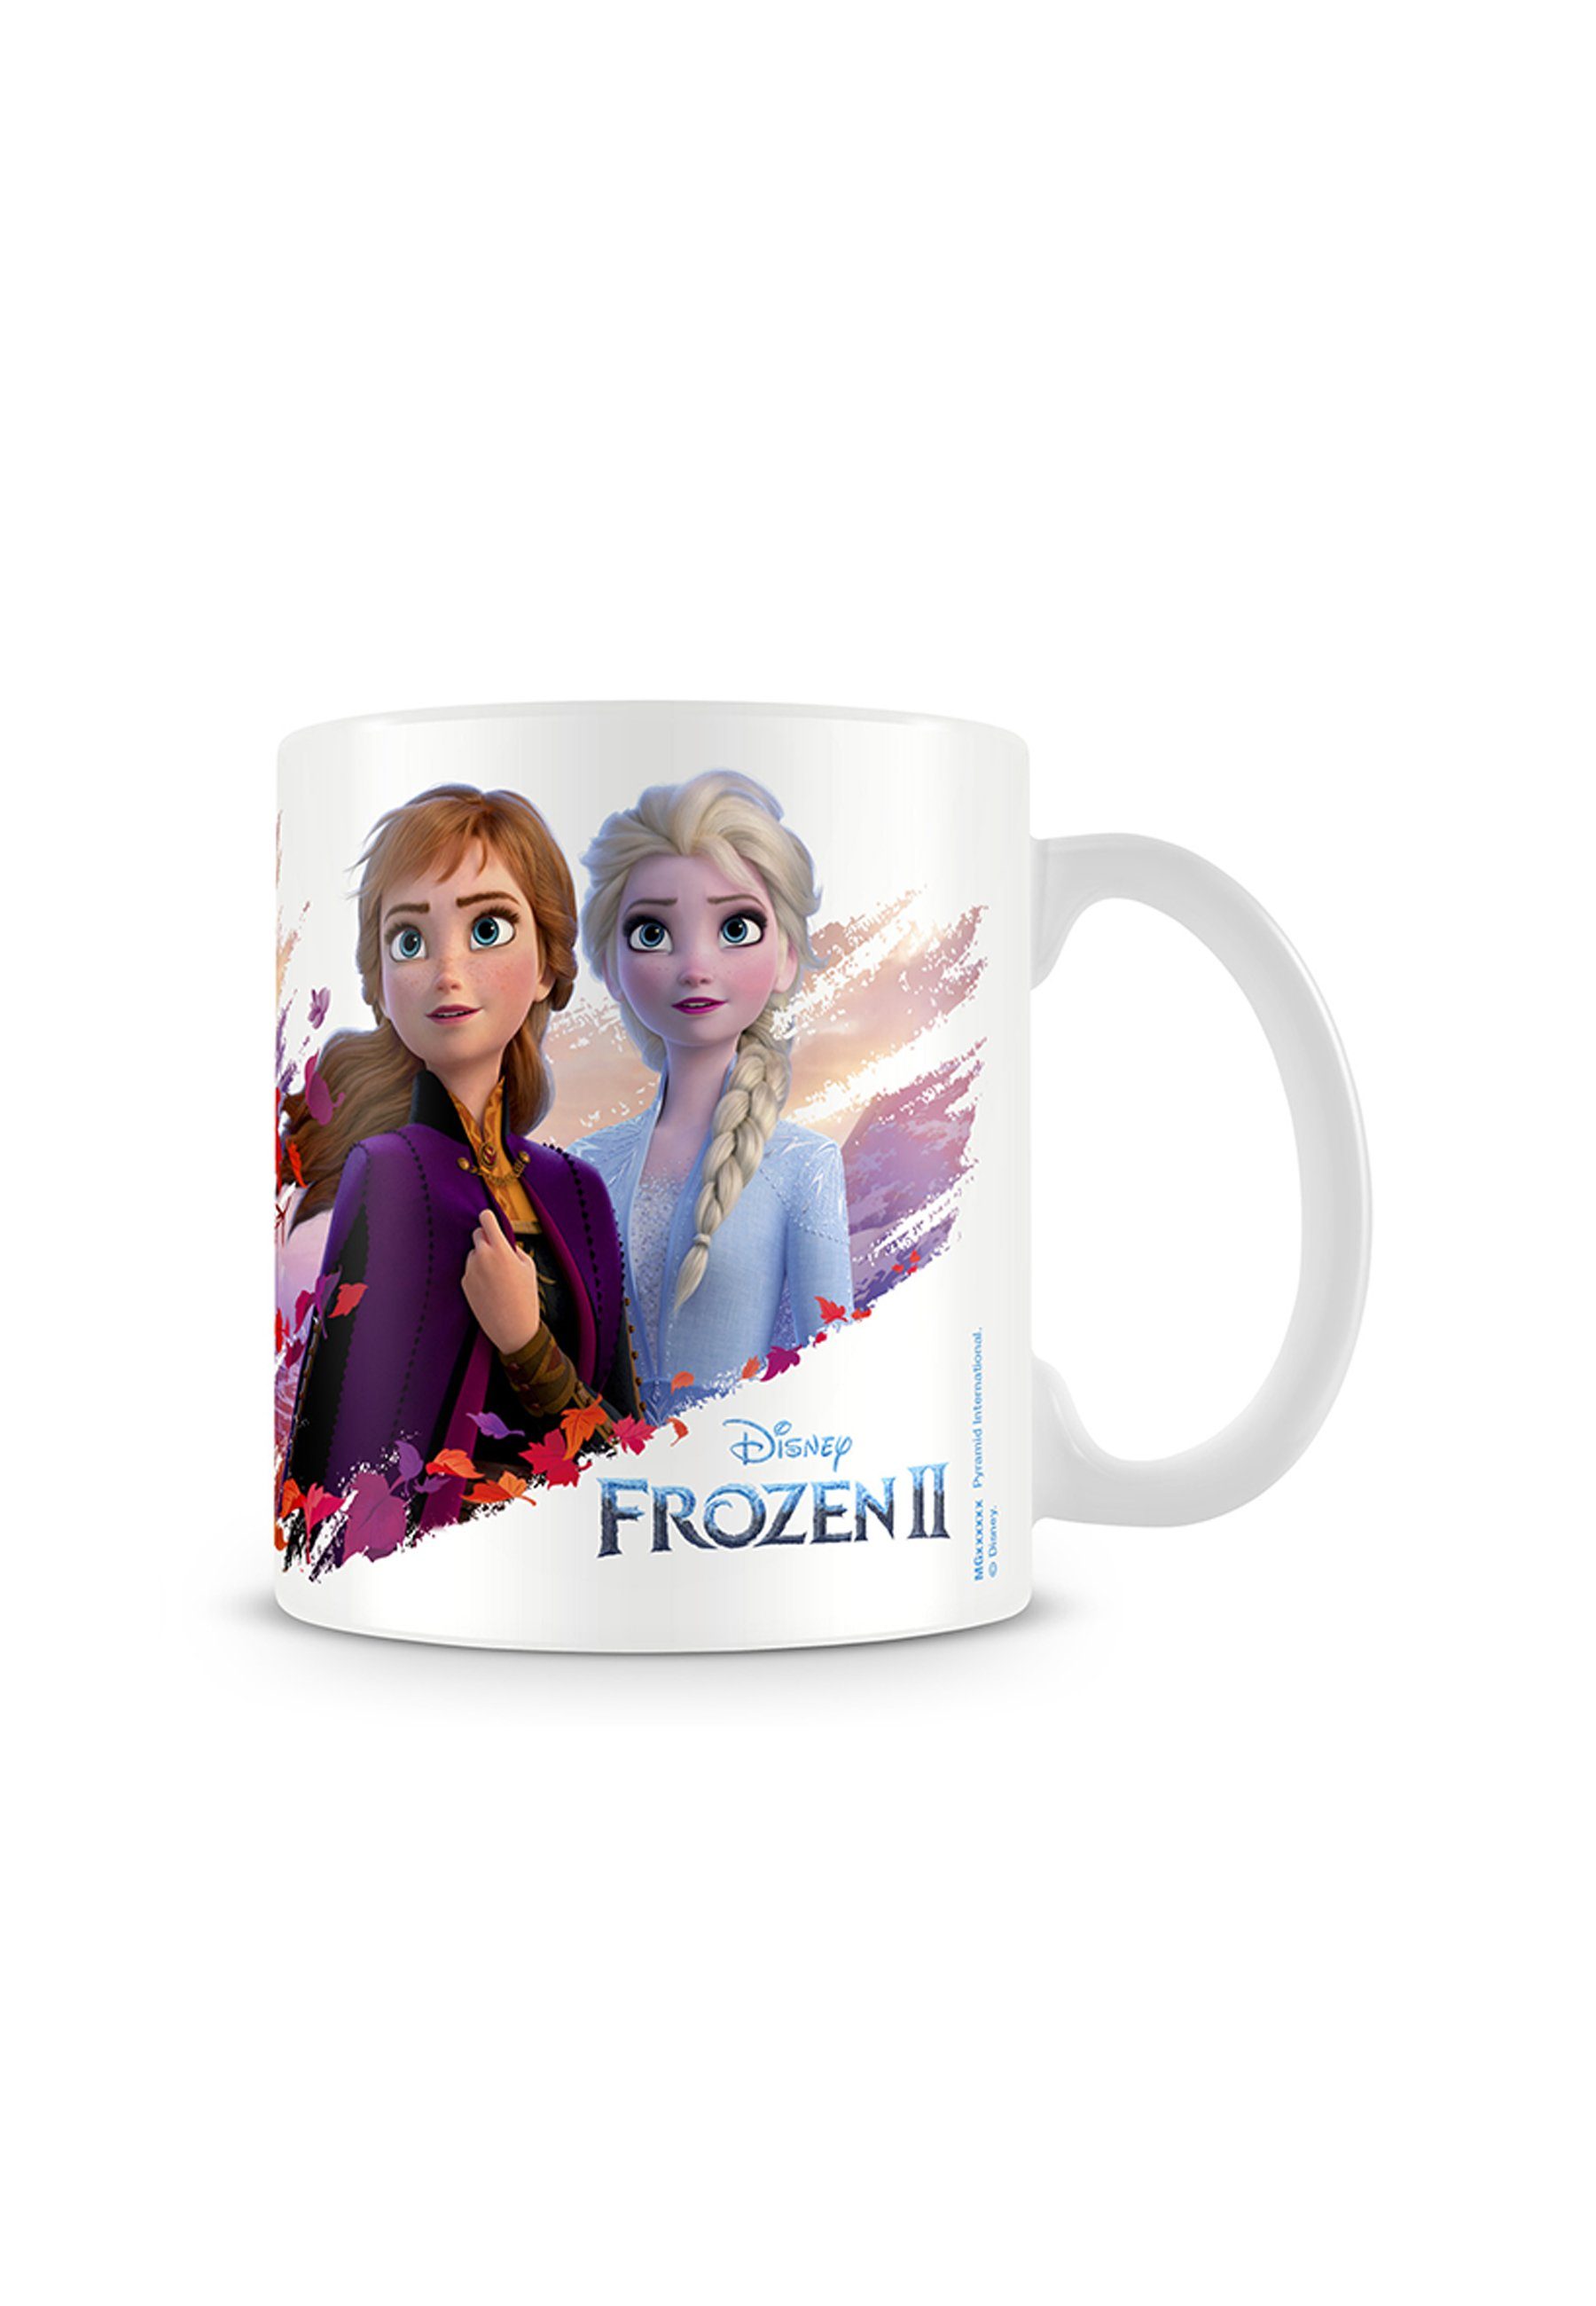 Disney Frozen Tasse Eiskönigin Anna & Elsa, Olaf Premium Porzellan Tasse  Becher, im Geschenkkarton, Tolle Porzellan-Tasse mit den Helden von Frozen  Anna, Elsa und Olaf